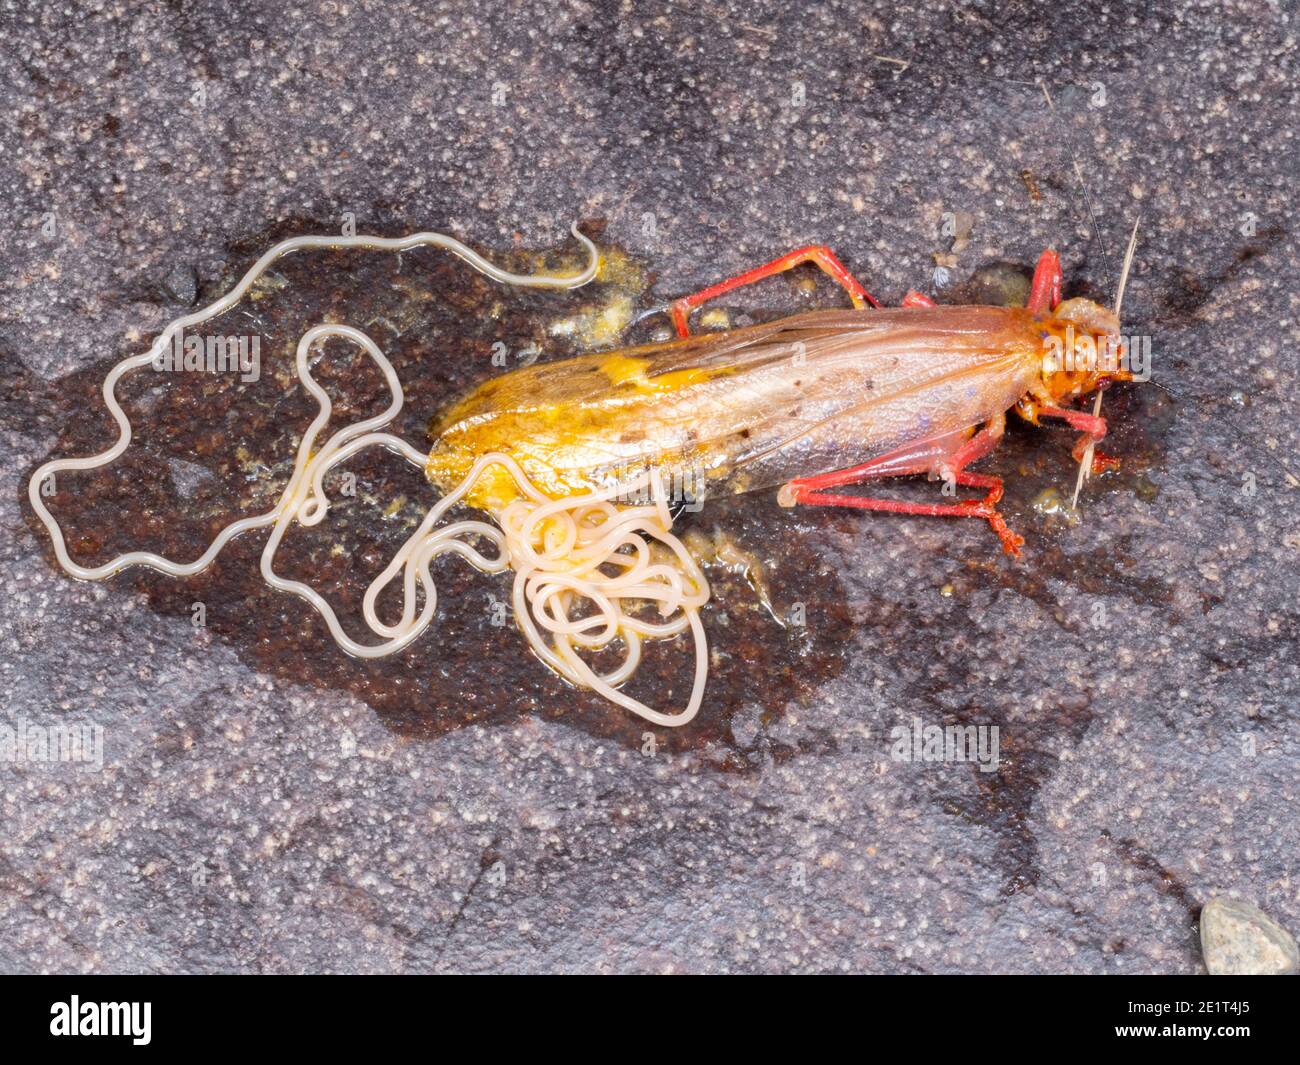 Nematodo parasitario infectando un escuadrón de cricket de monte por un coche En el camino en la Amazonia ecuatoriana Foto de stock